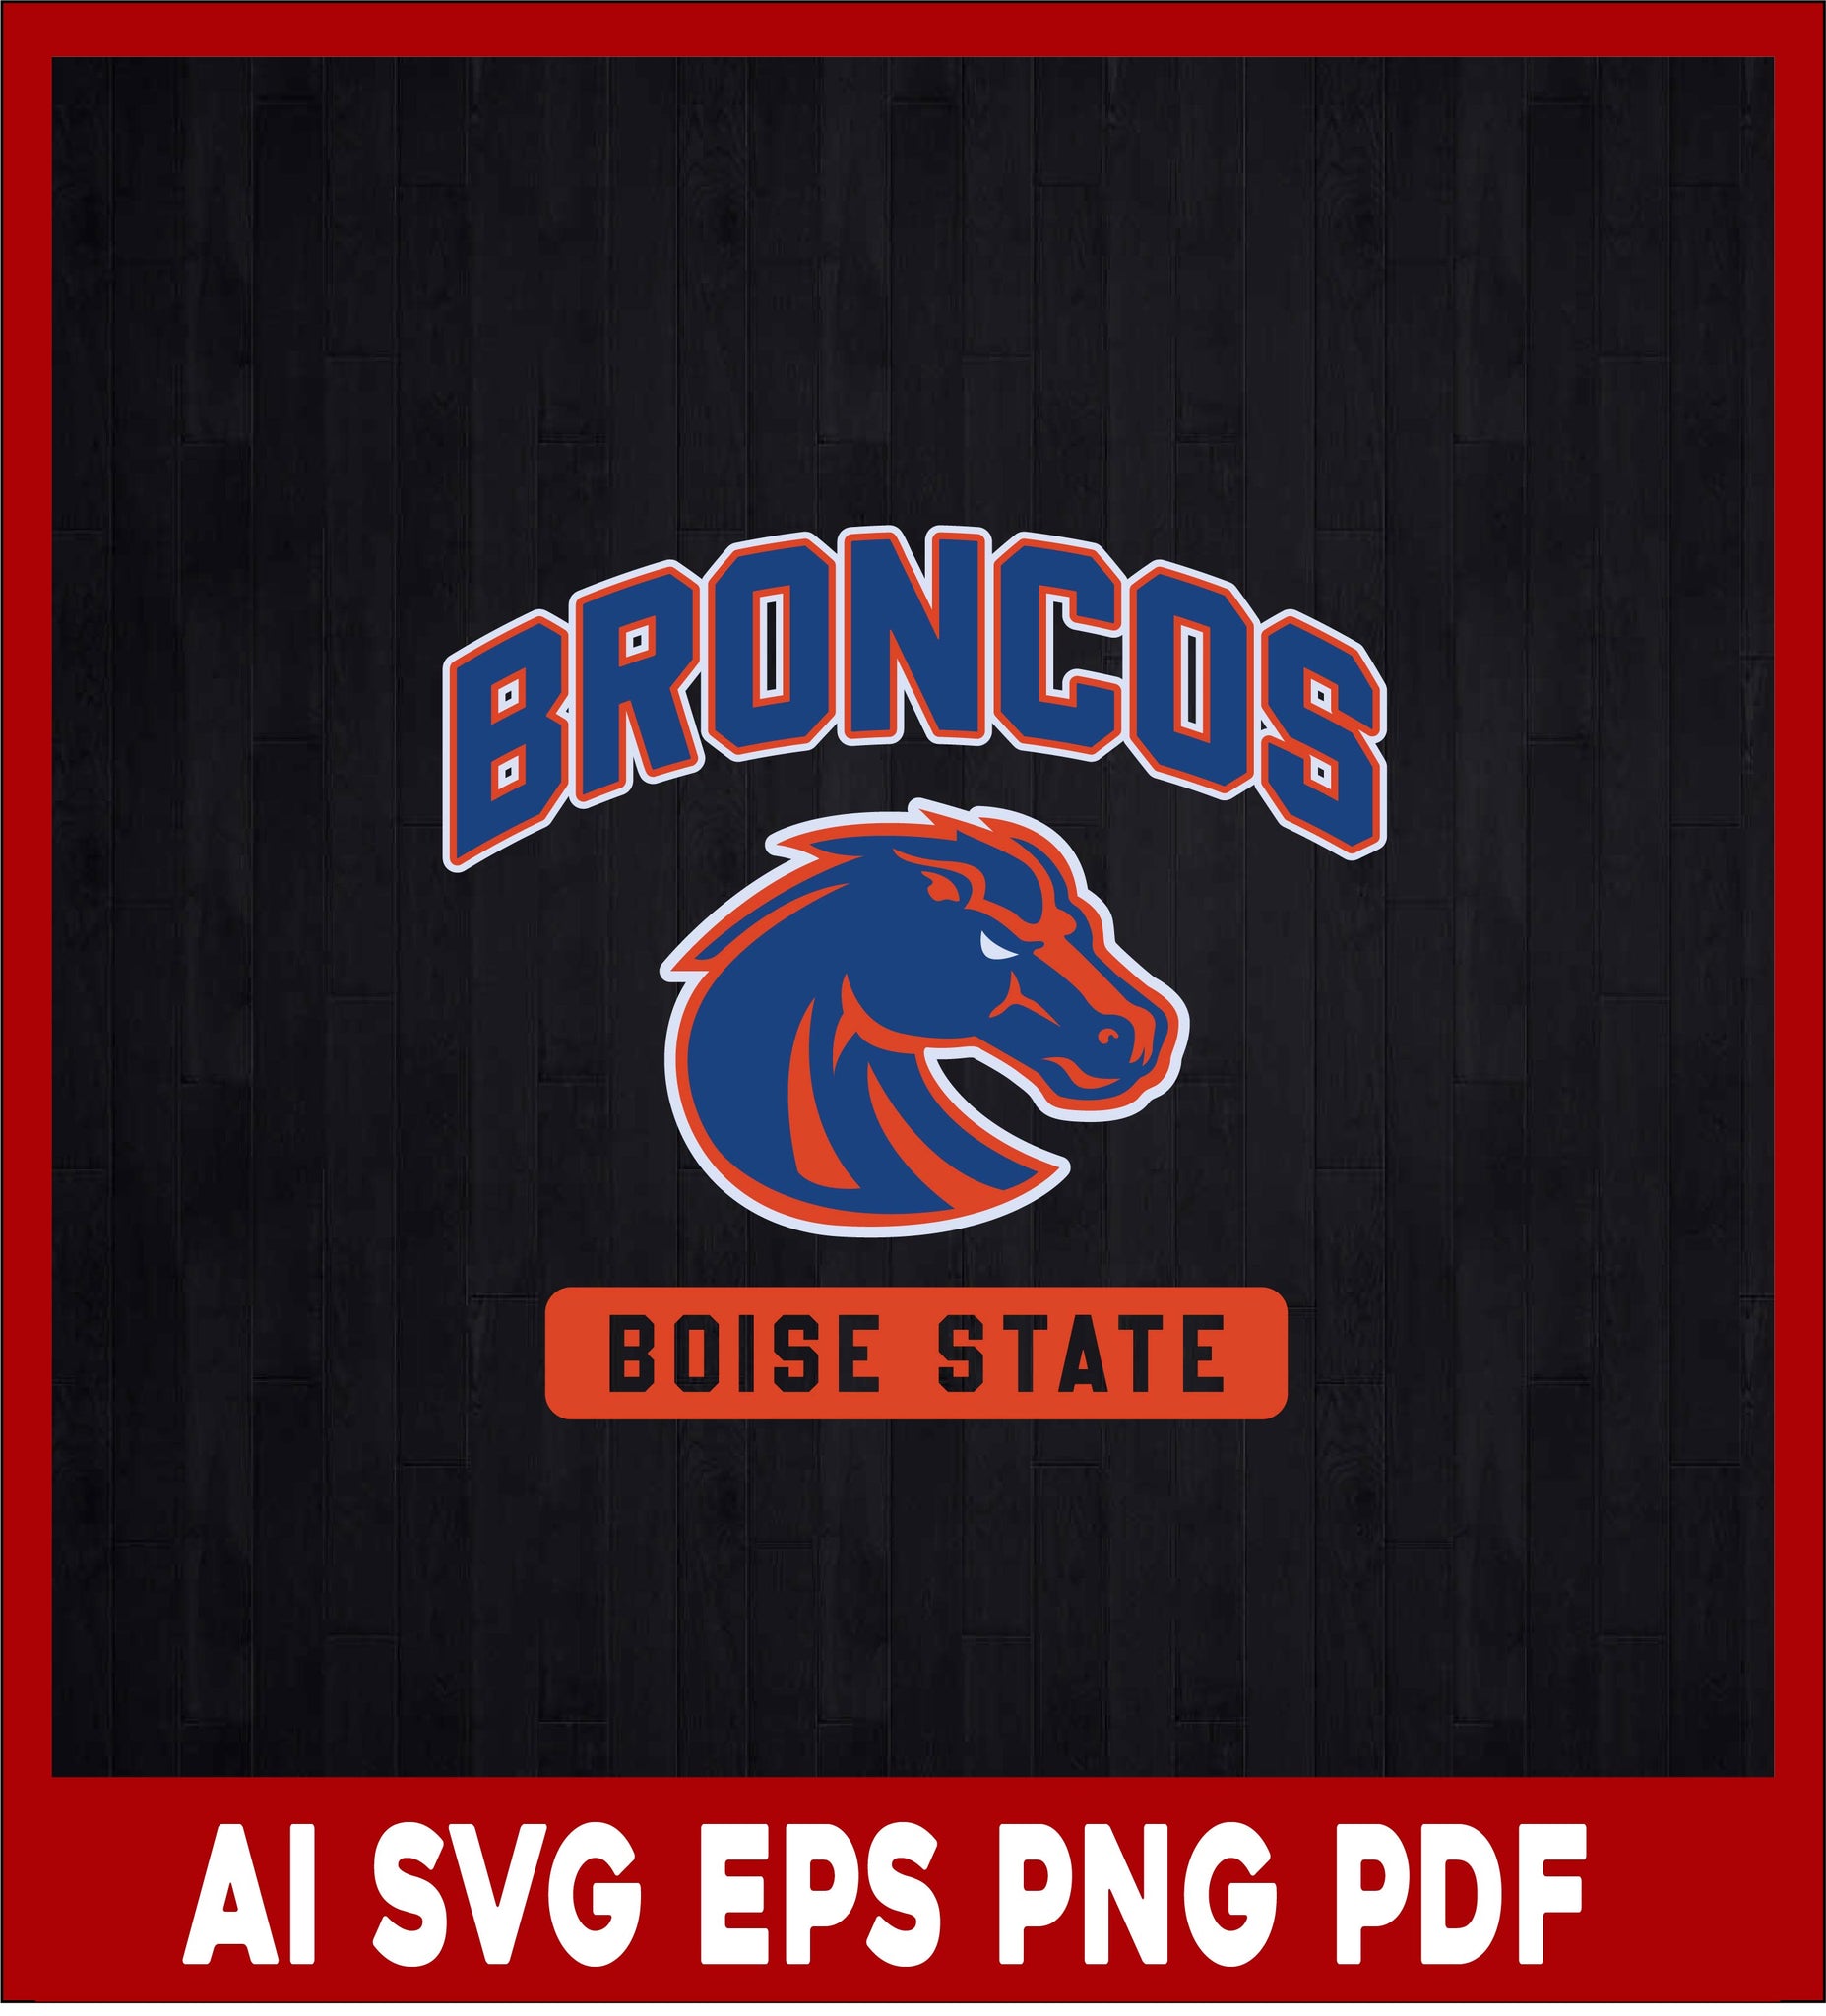 Denver Broncos Boise State, Broncos Svg, Denver Broncos Logo